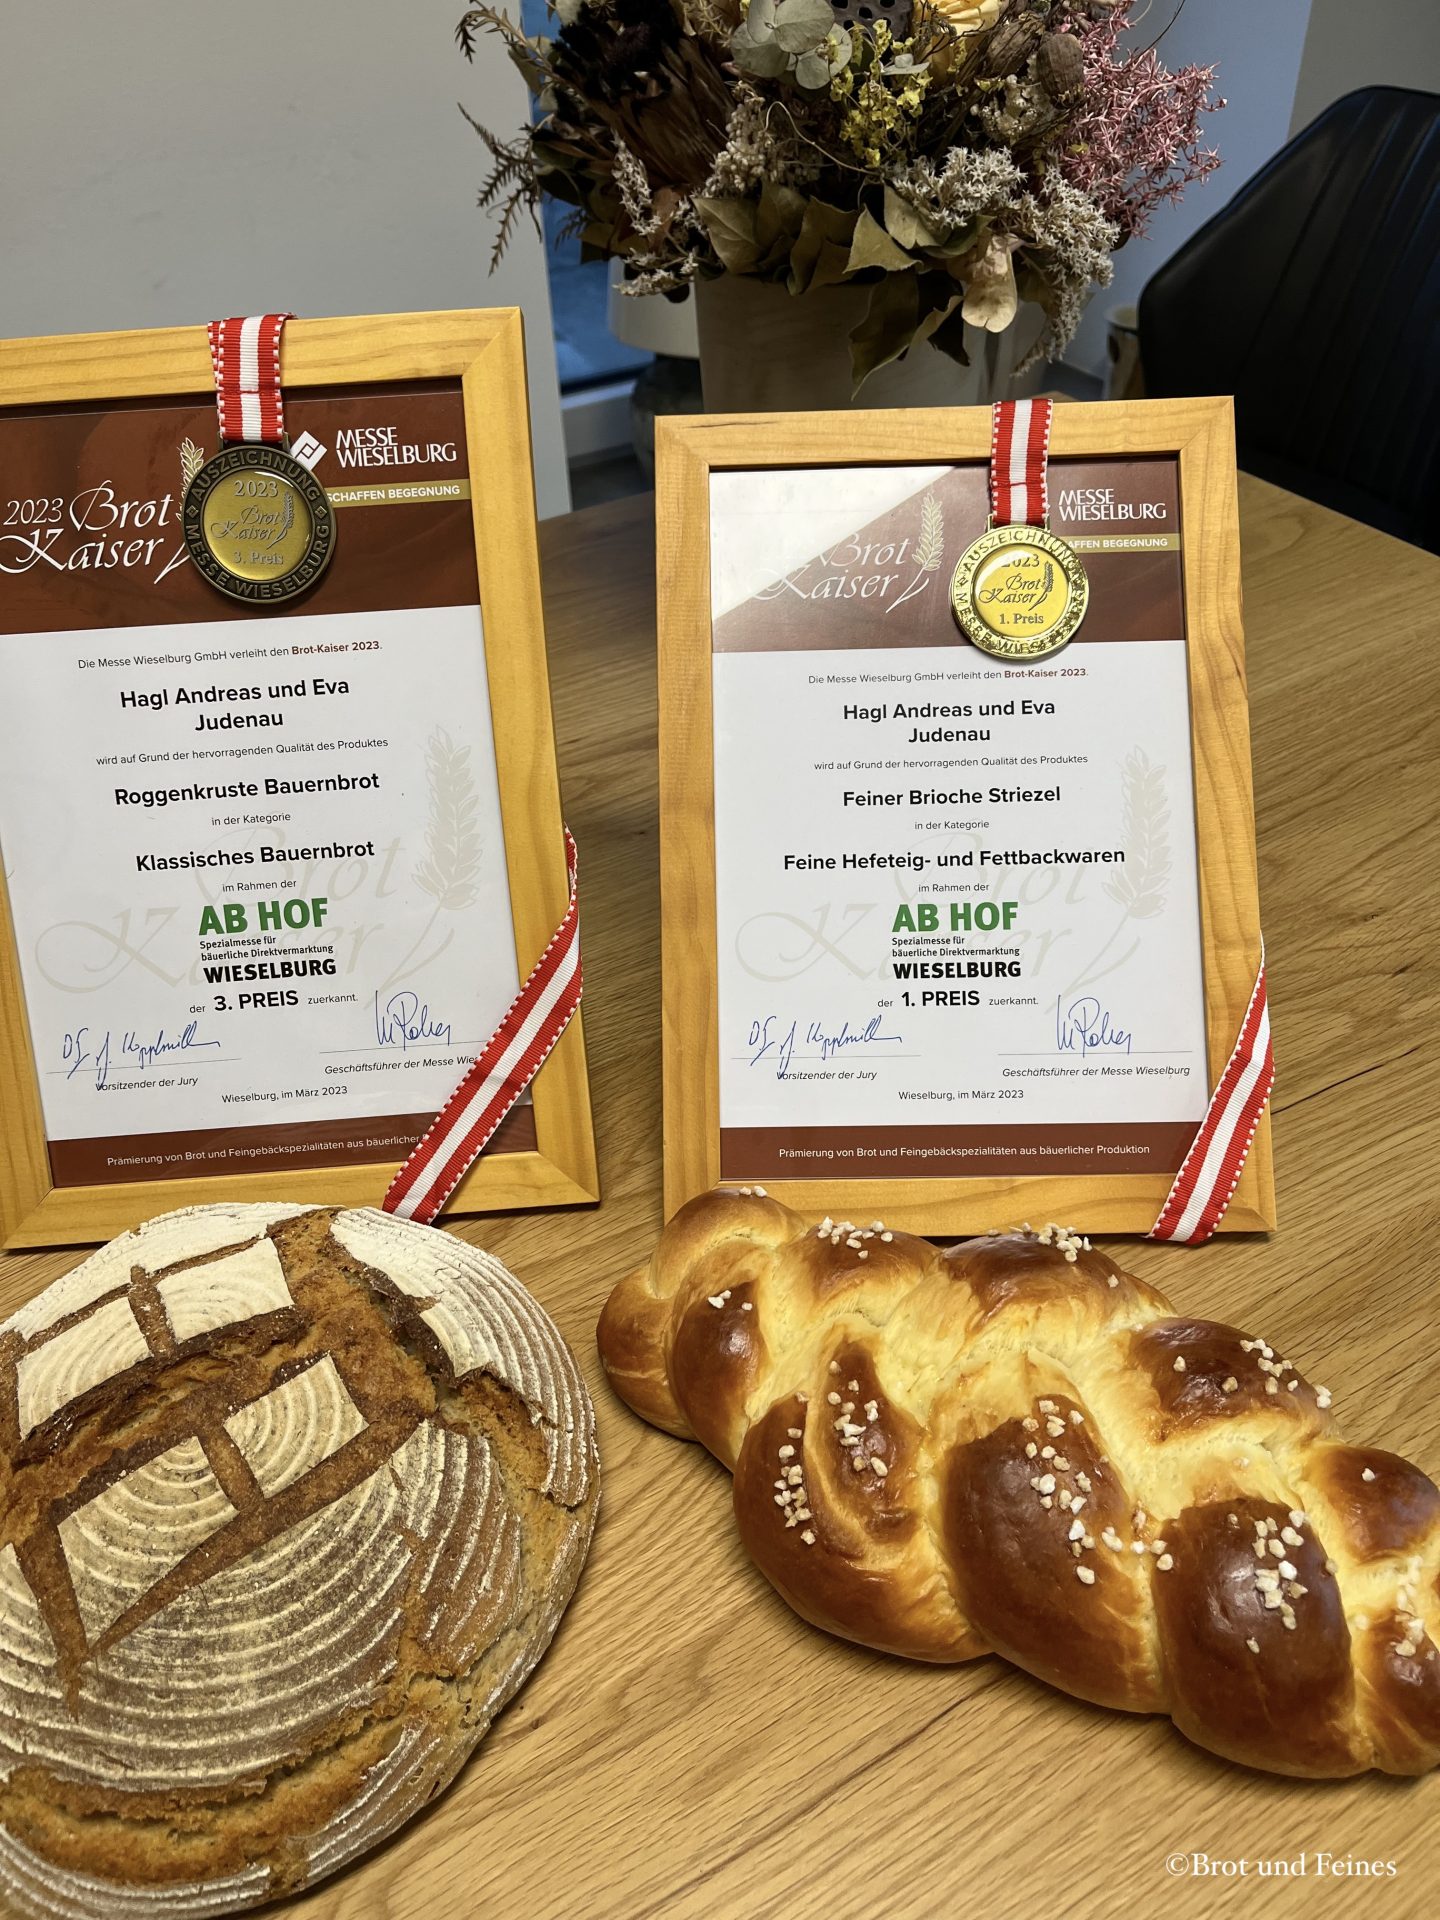 Medaillen für "Brot und Feines" für das Bauernbrot und den köstlichen Striezel